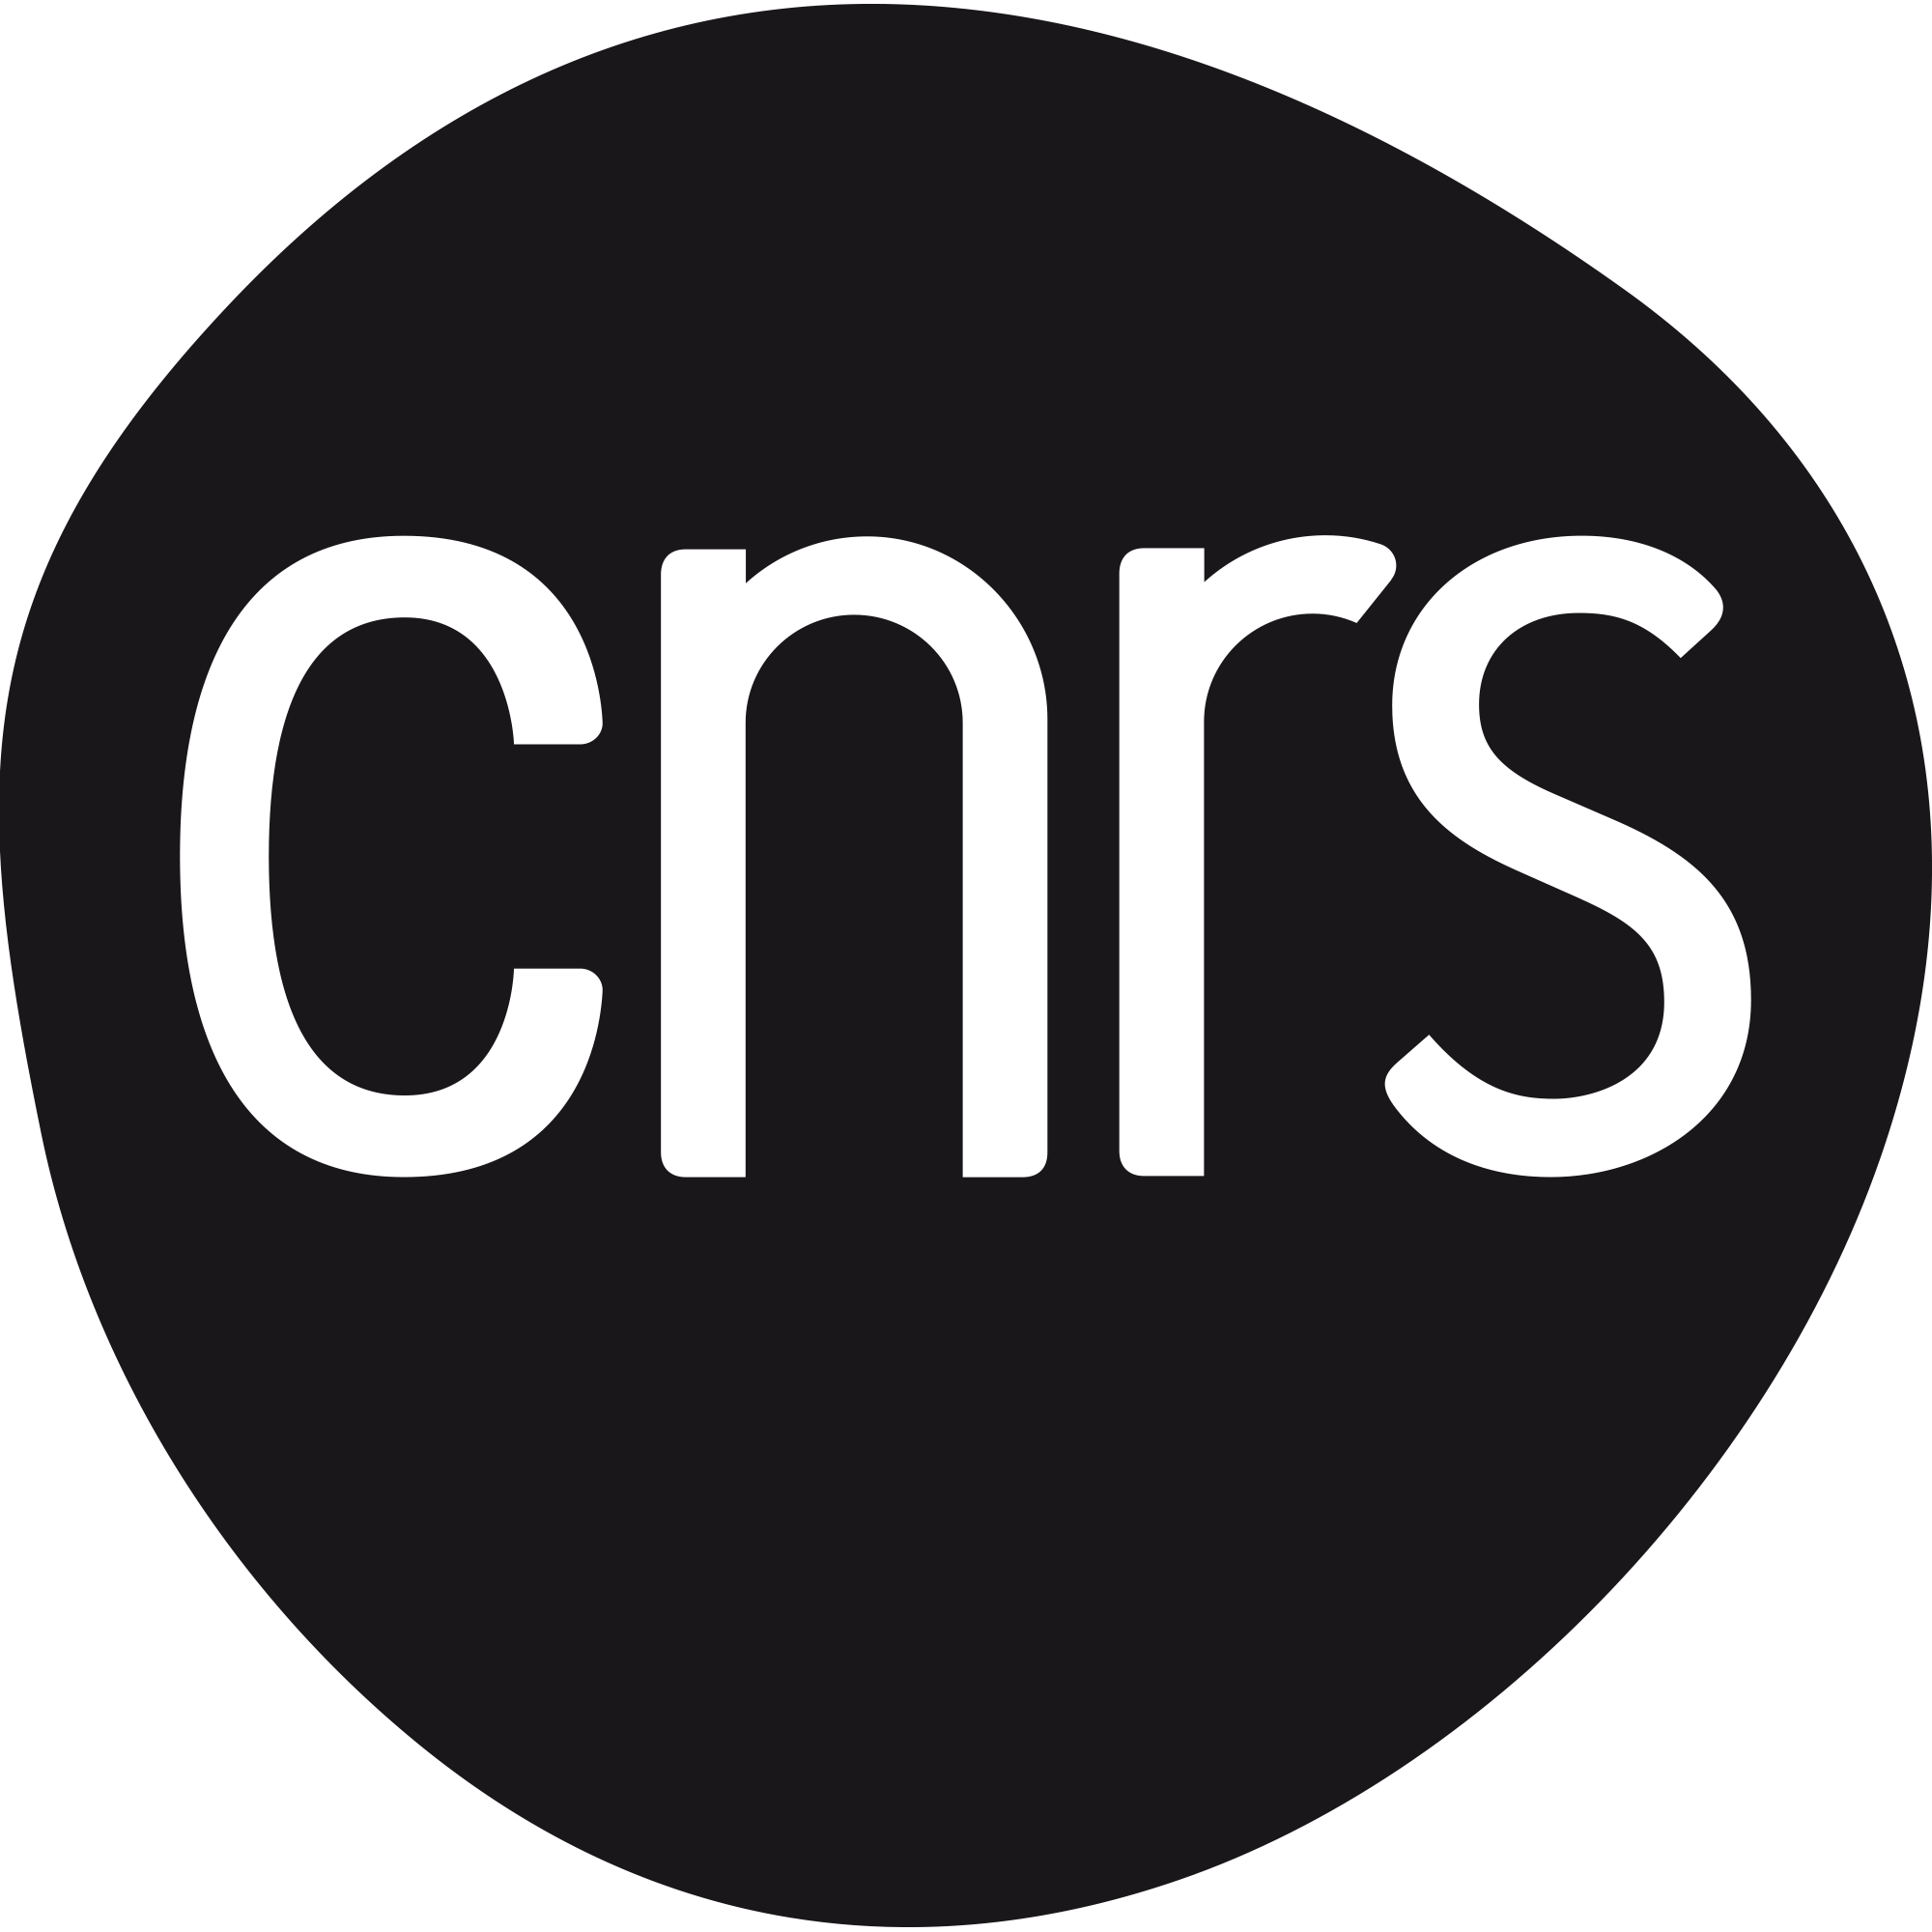 logo_cnrs_2019_noir.gif